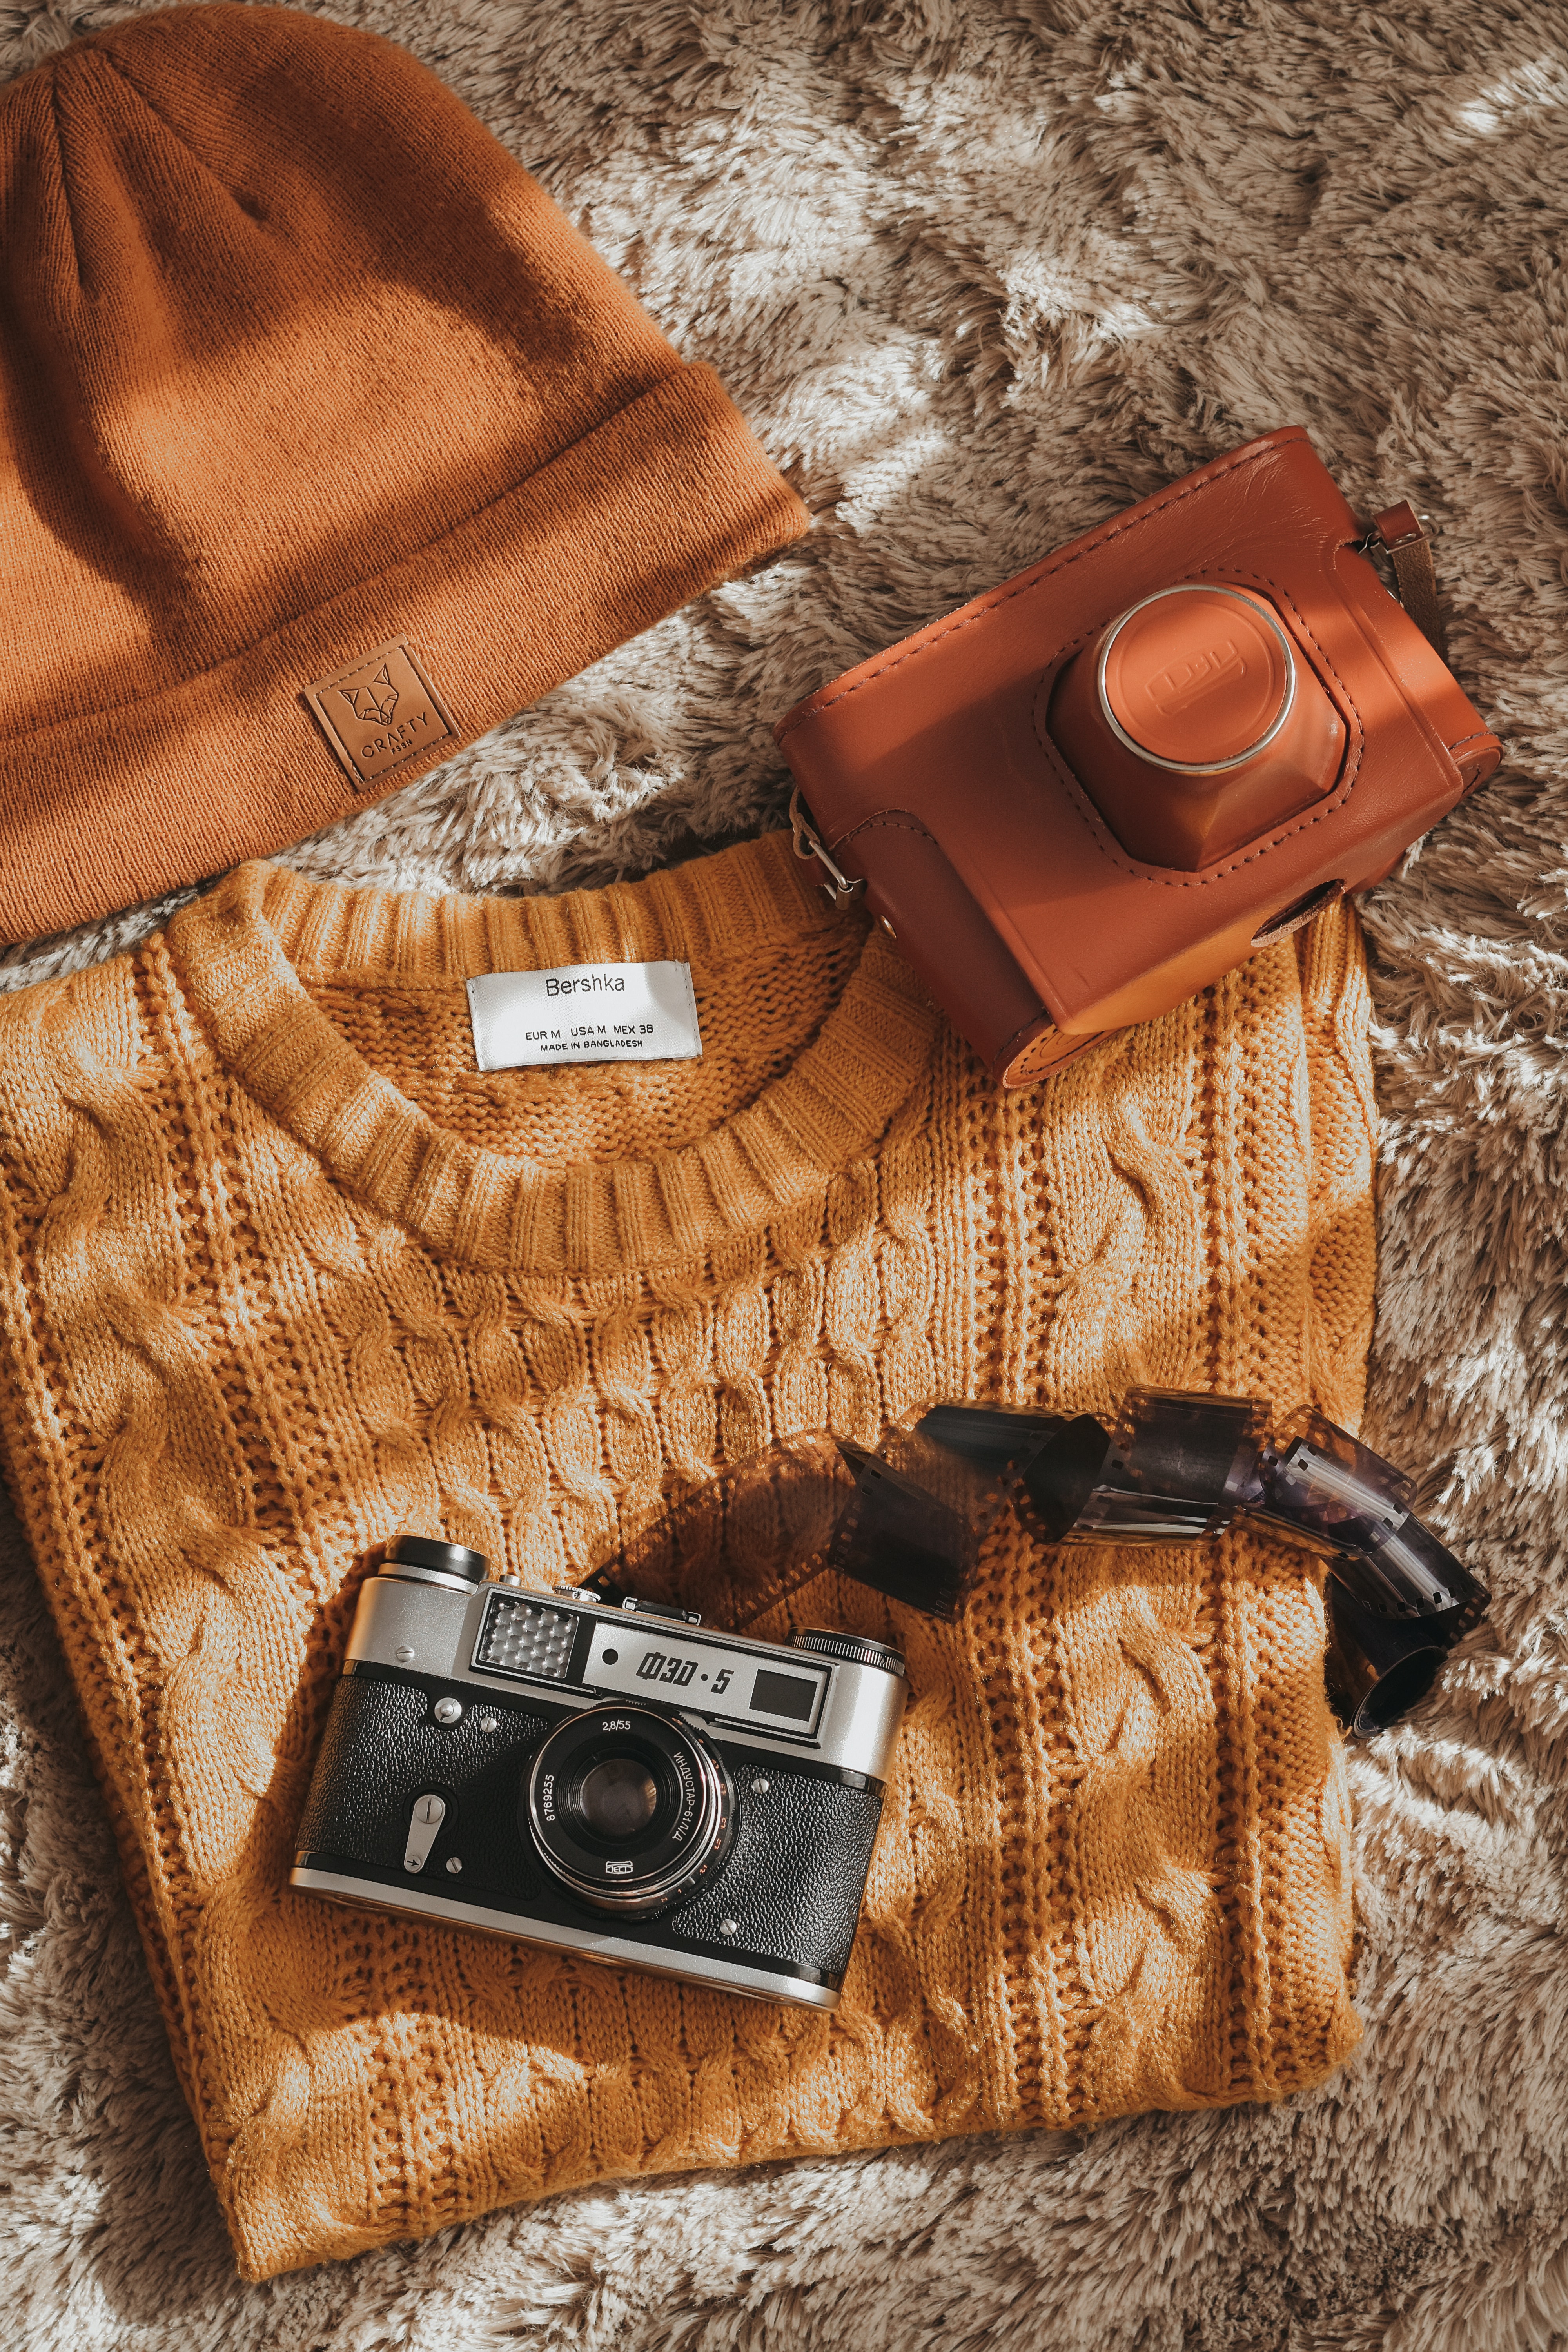 miscellanea, miscellaneous, retro, camera, film, sweater